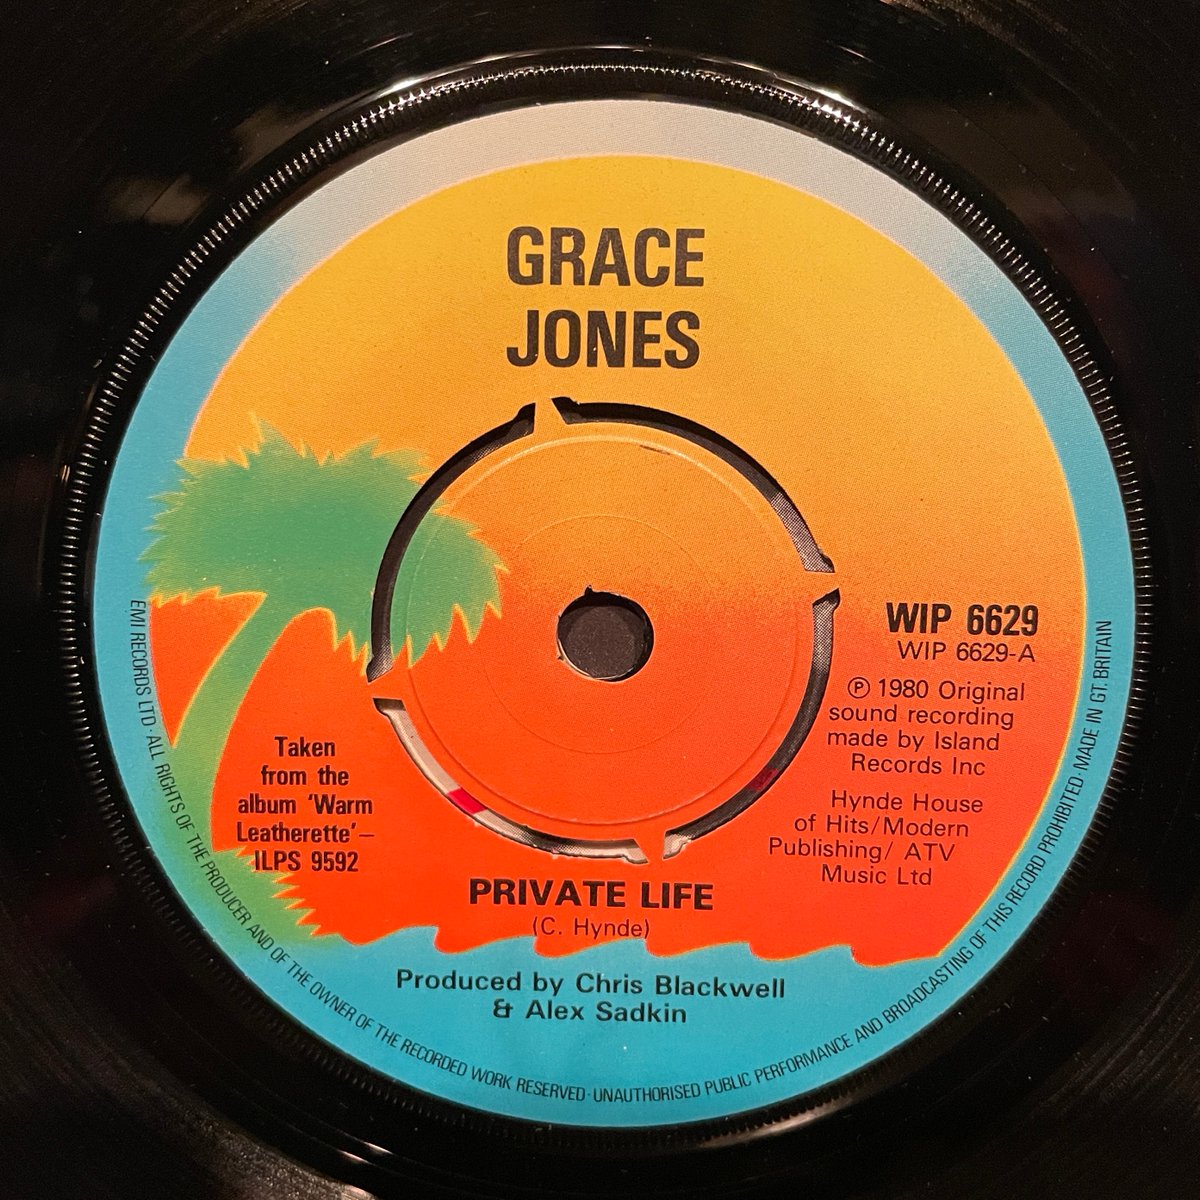 ほな7いこか
GRACE JONES / Private Life [’80 Island Records --- WIP 6629]　　　
#GraceJones  #PrivateLife  #ShesLostControl  #AlexSadkin  #ChrisBlackwell  #ChrissieHynde  #ThePretenders  #JoyDivision  #vinylbar  #recordbar  #レコードバー  #mhc07012023
youtube.com/watch?v=yvLn_q…